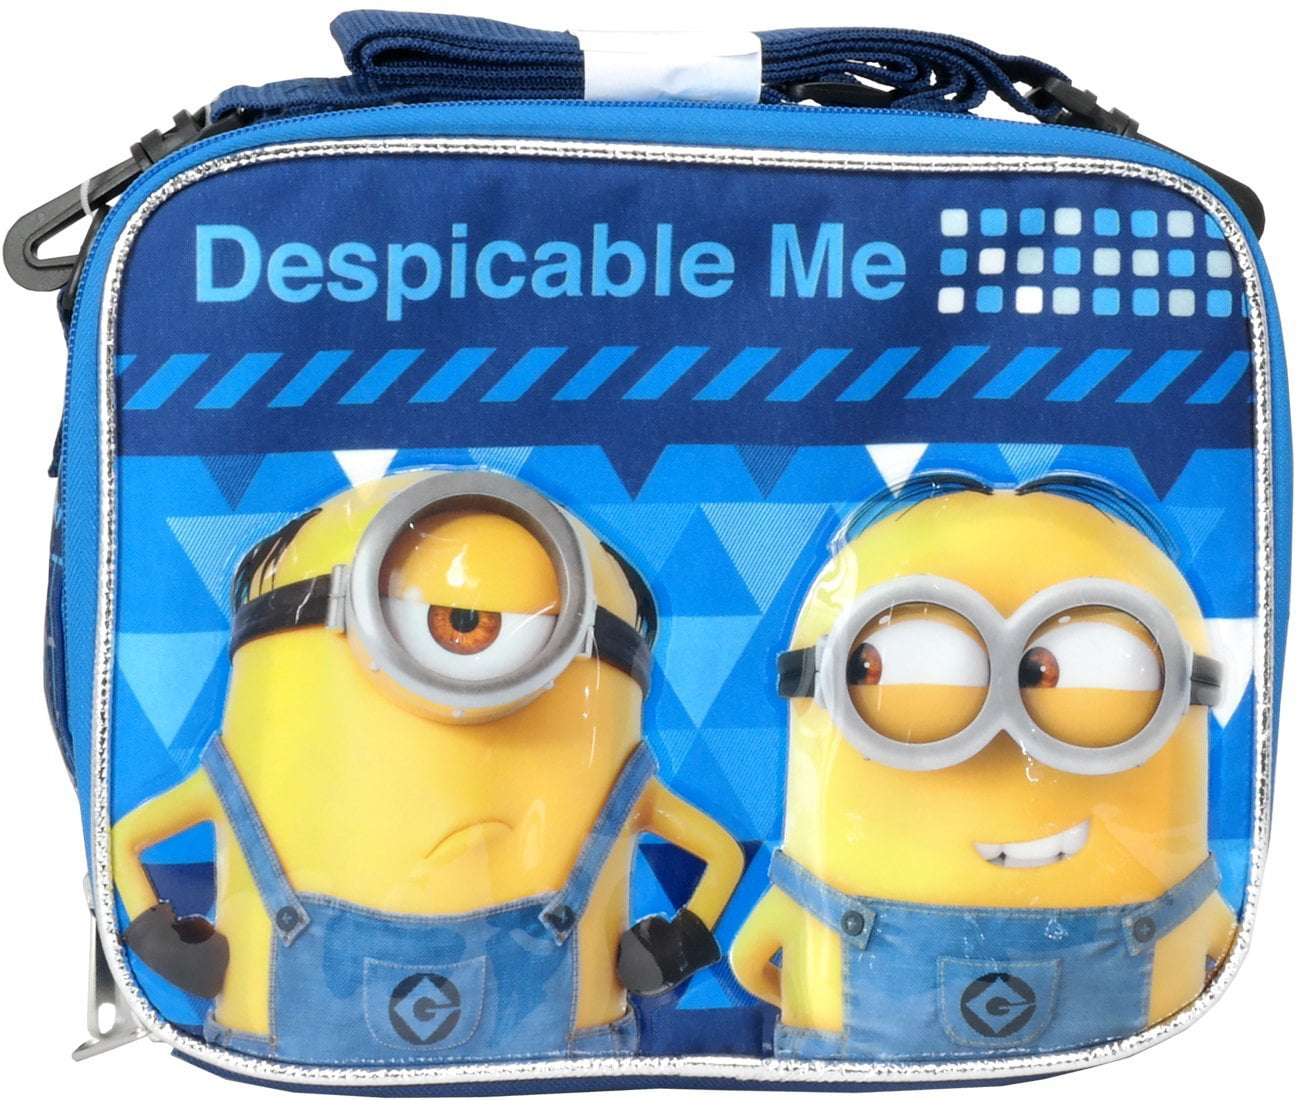 1 x Despicable Me 3 Minions Kids Coin Pouch Soft Plush Purse Bag 